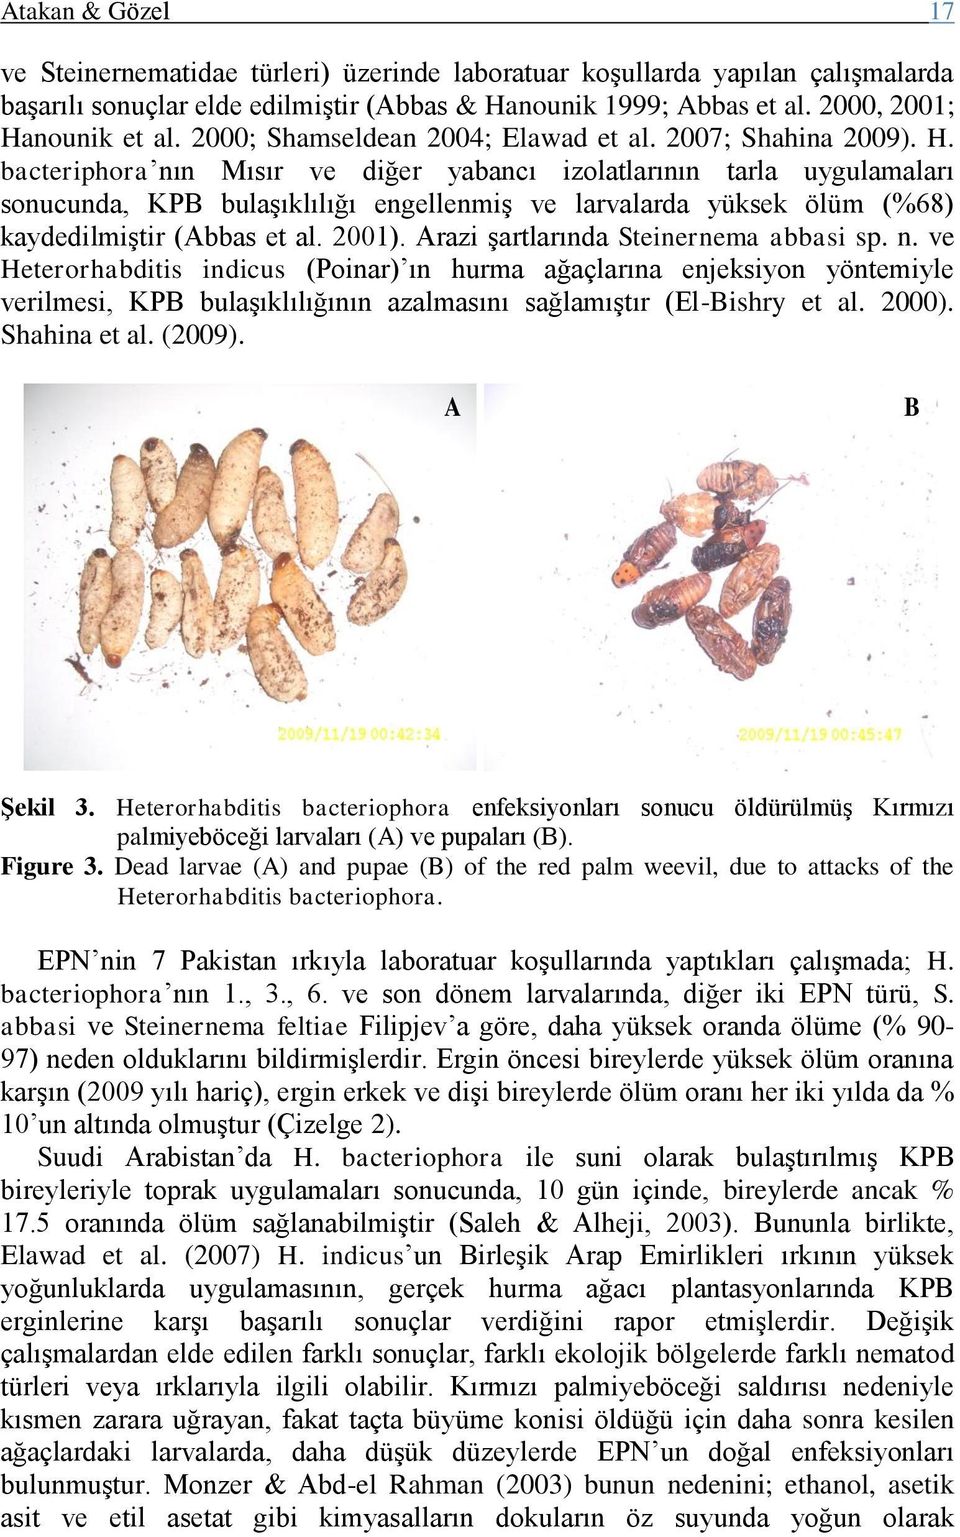 bacteriphora nın Mısır ve diğer yabancı izolatlarının tarla uygulamaları sonucunda, KPB bulaşıklılığı engellenmiş ve larvalarda yüksek ölüm (%68) kaydedilmiştir (Abbas et al. 2001).